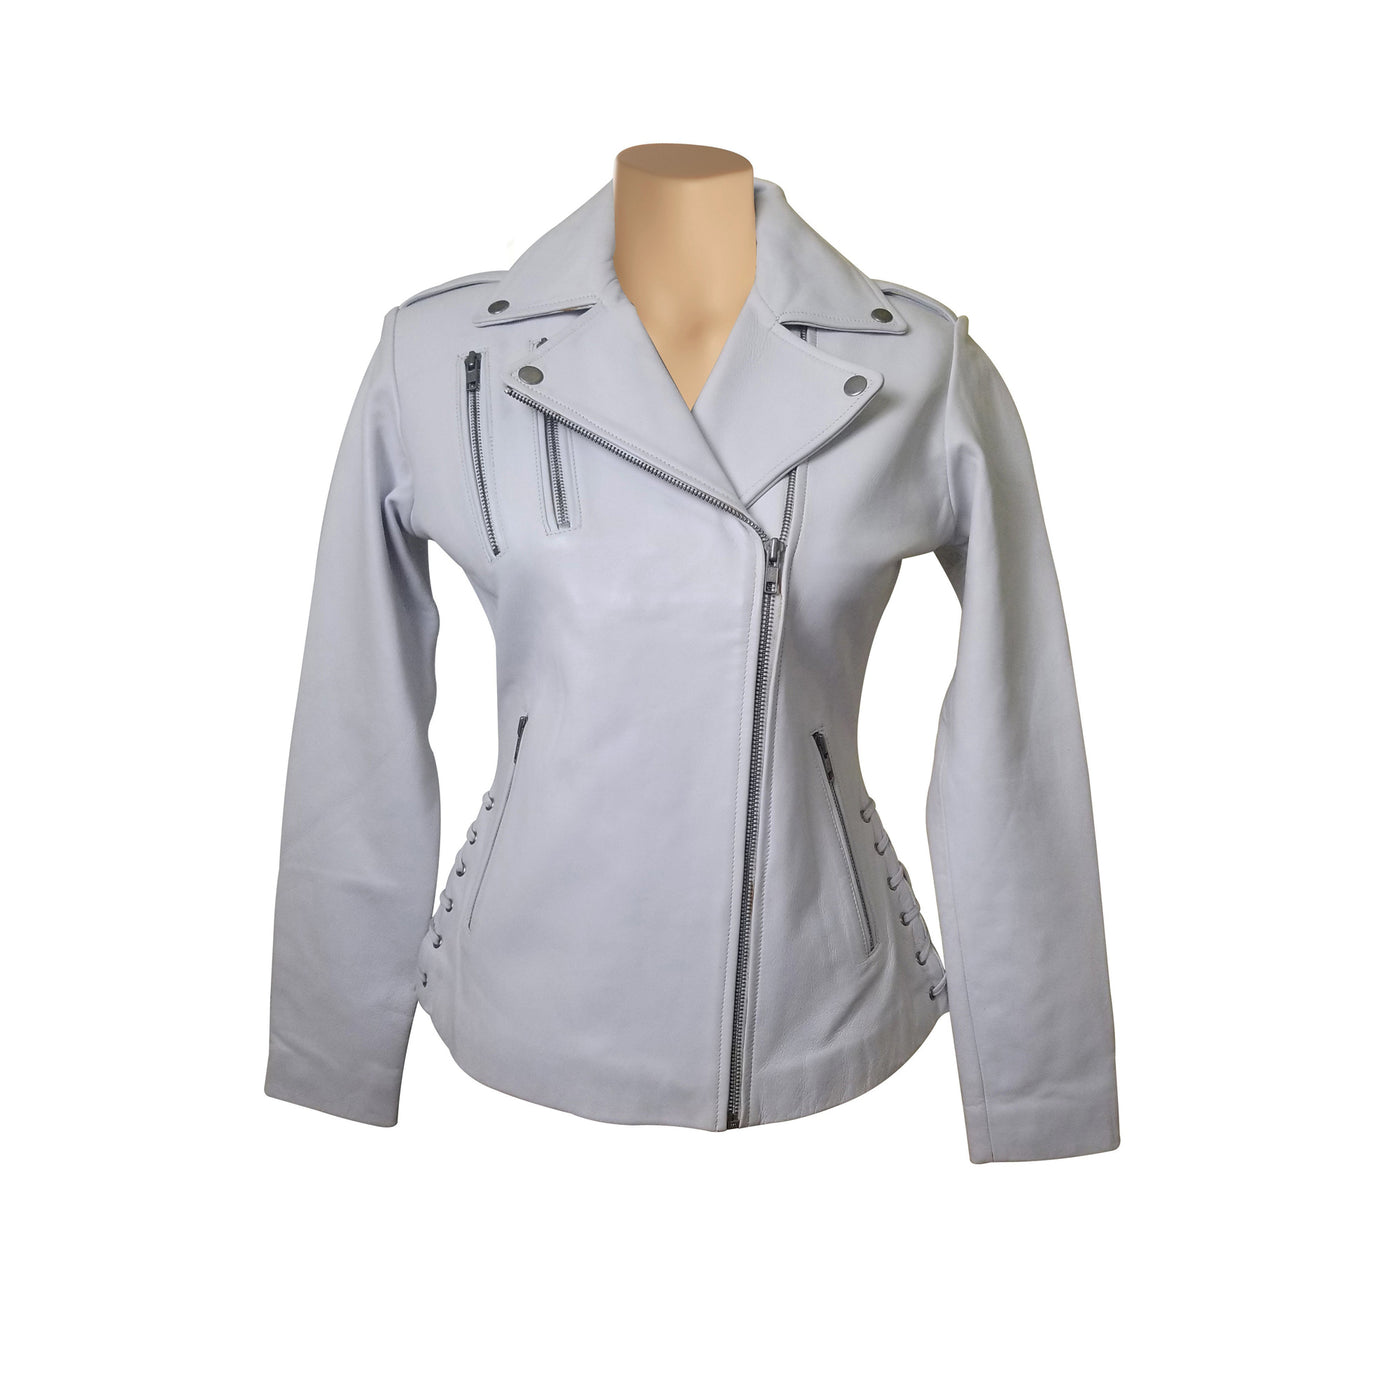 Stylish Callie's white leather biker jacket